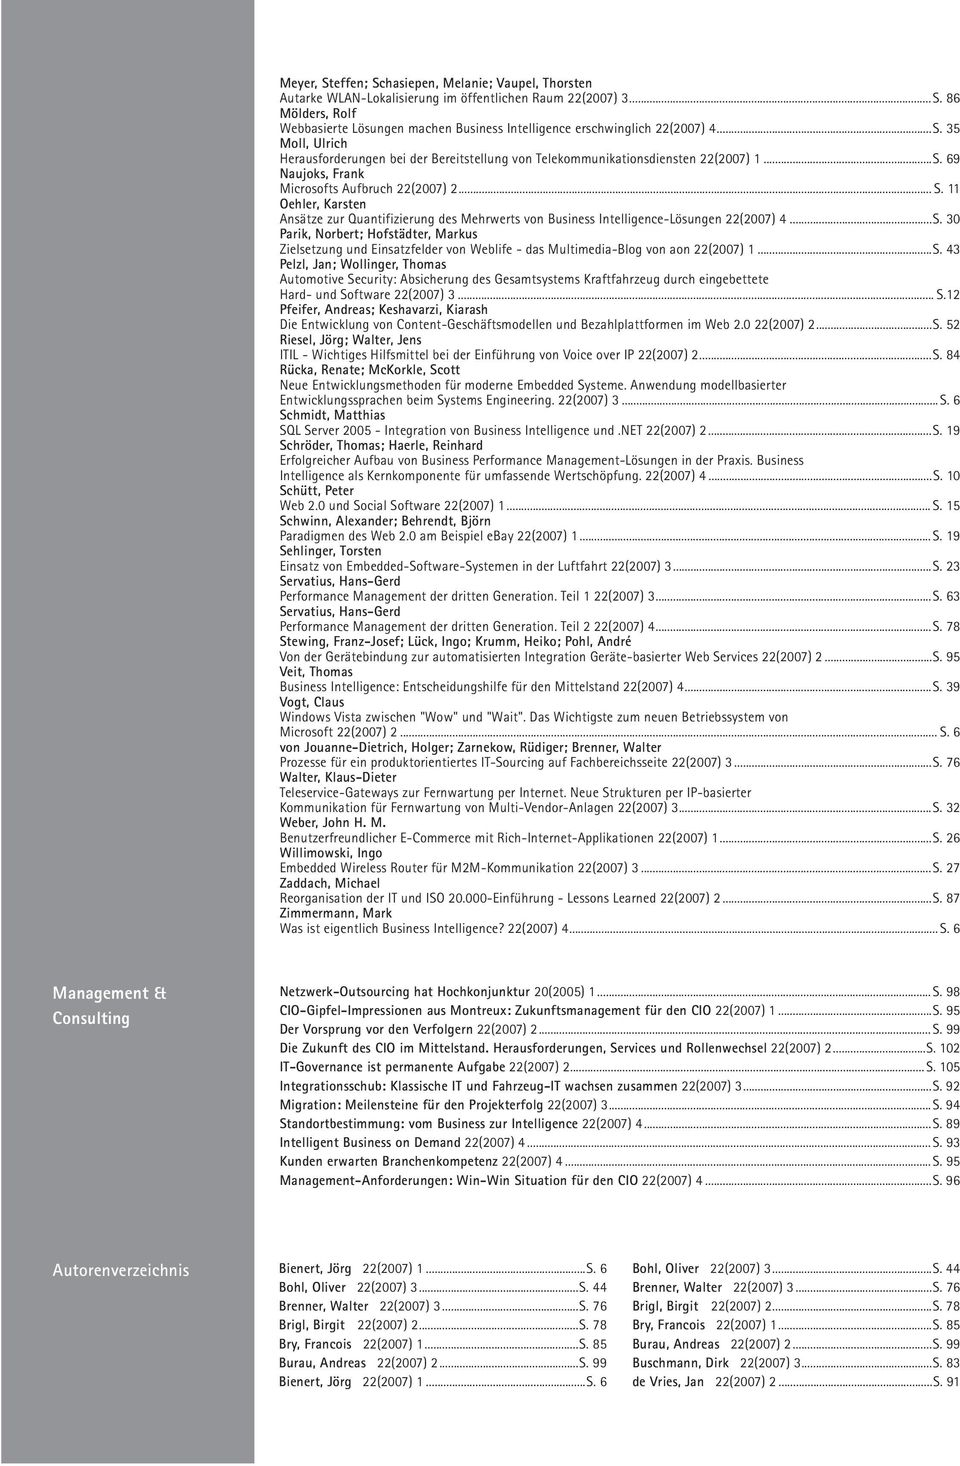 11 Oehler, Karsten Ansätze zur Quantifizierung des Mehrwerts von Business Intelligence-Lösungen 22(2007) 4...S.